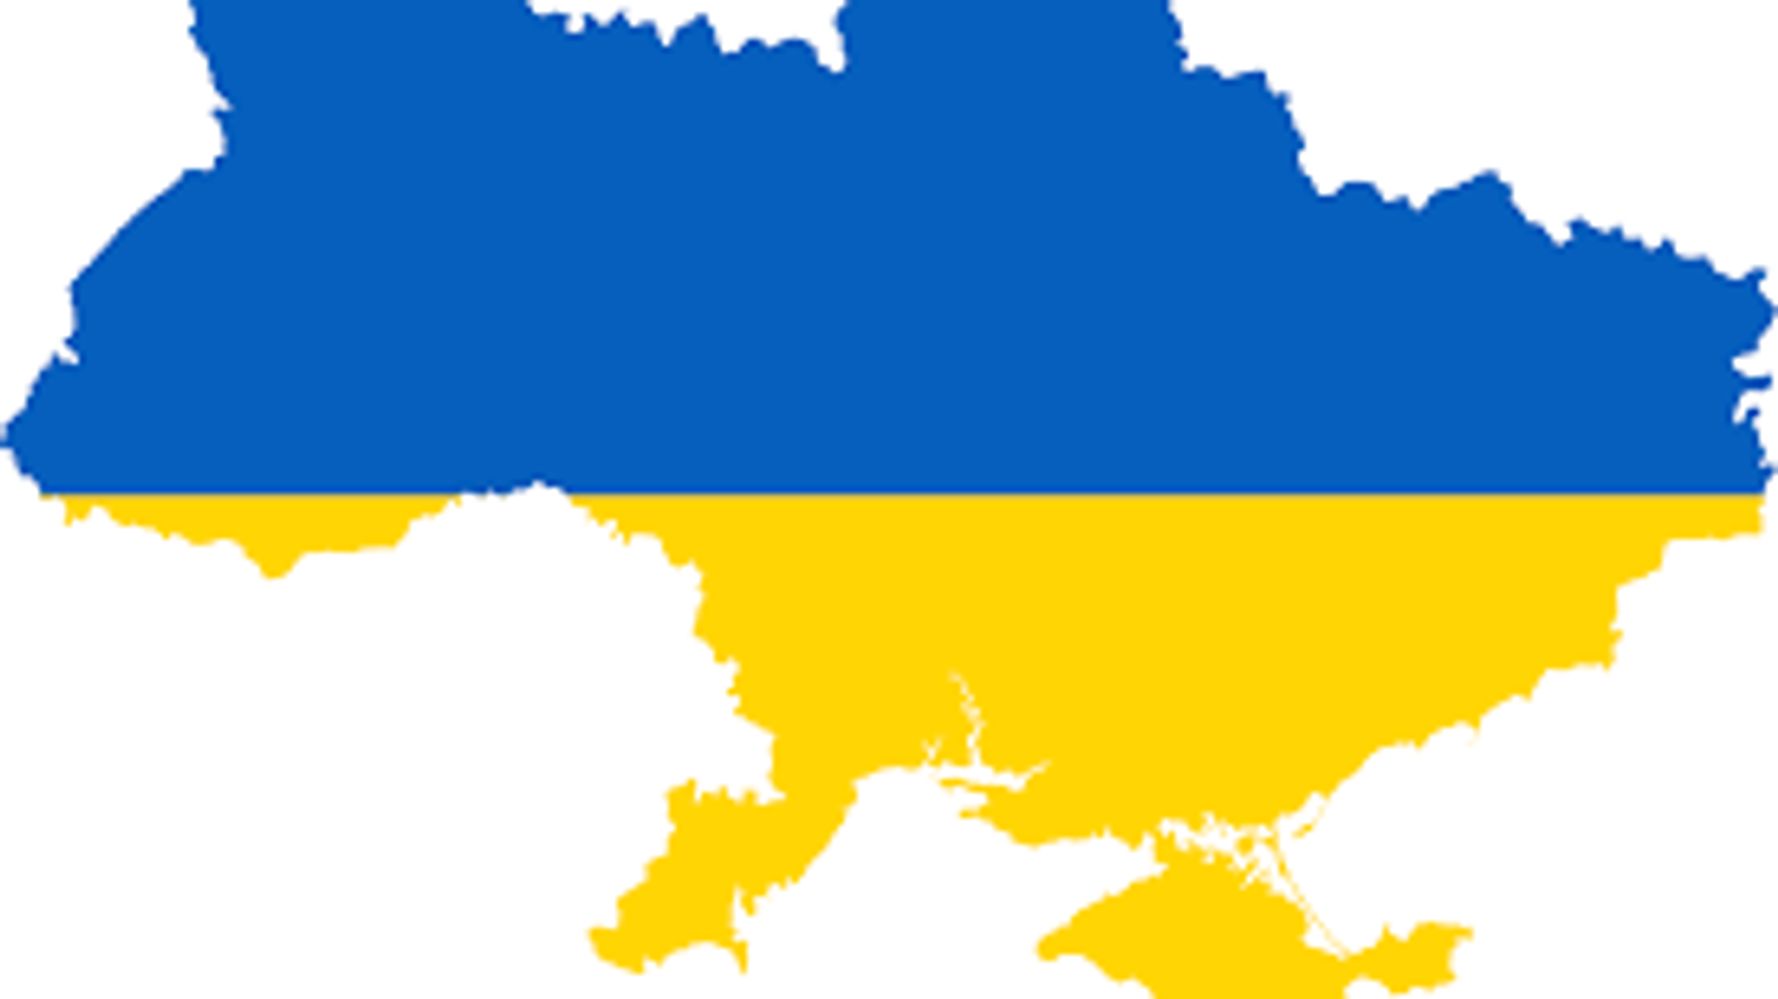 Карта Украины без Крыма